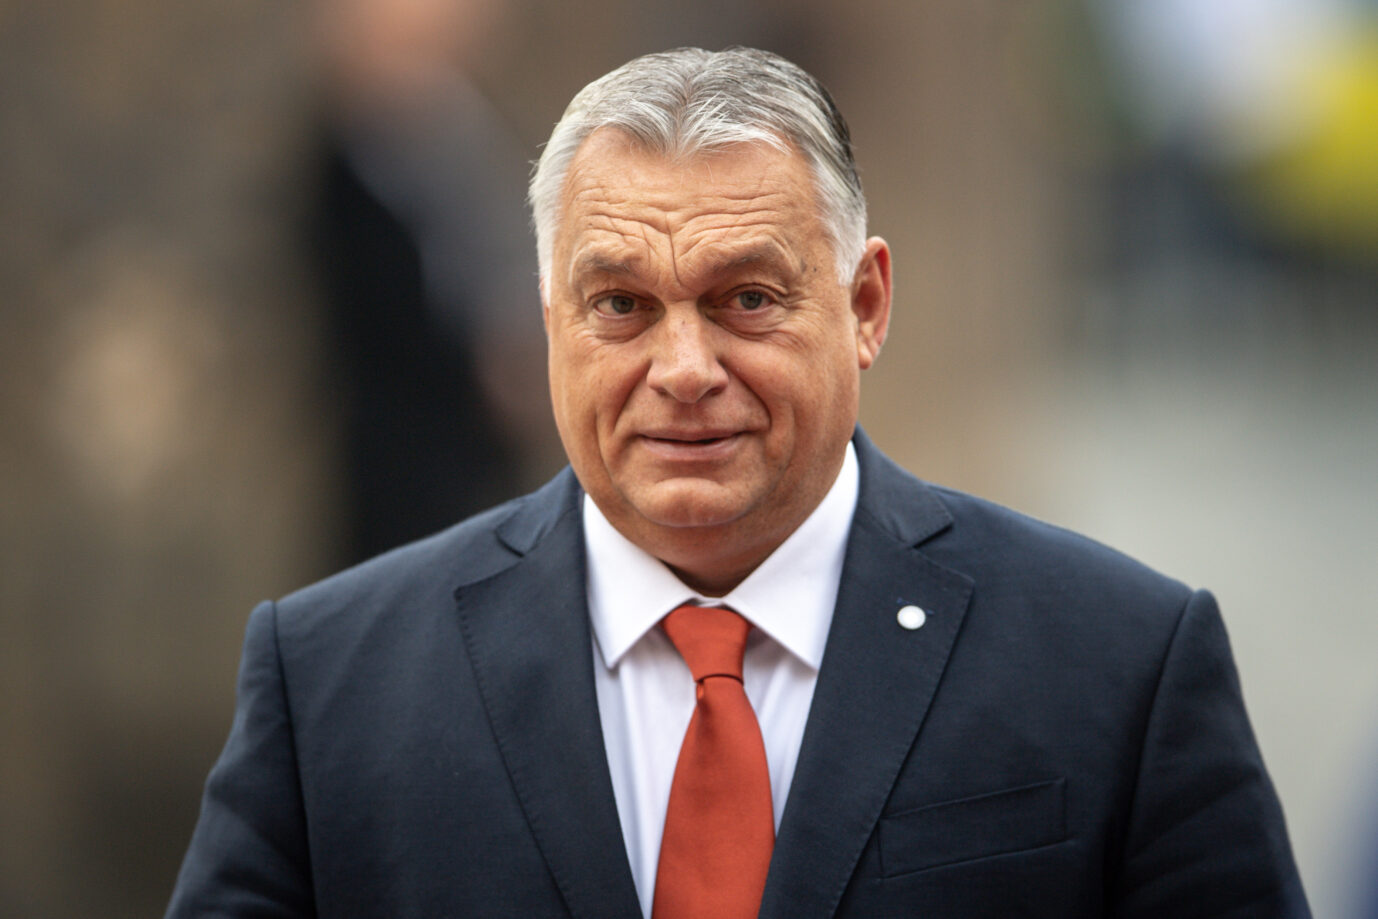 Das Bild zeigt den ungarischen Ministerpräsidenten, Viktor Orbán. Er ist ein scharfer Kritiker des Asylkompromißes der EU.